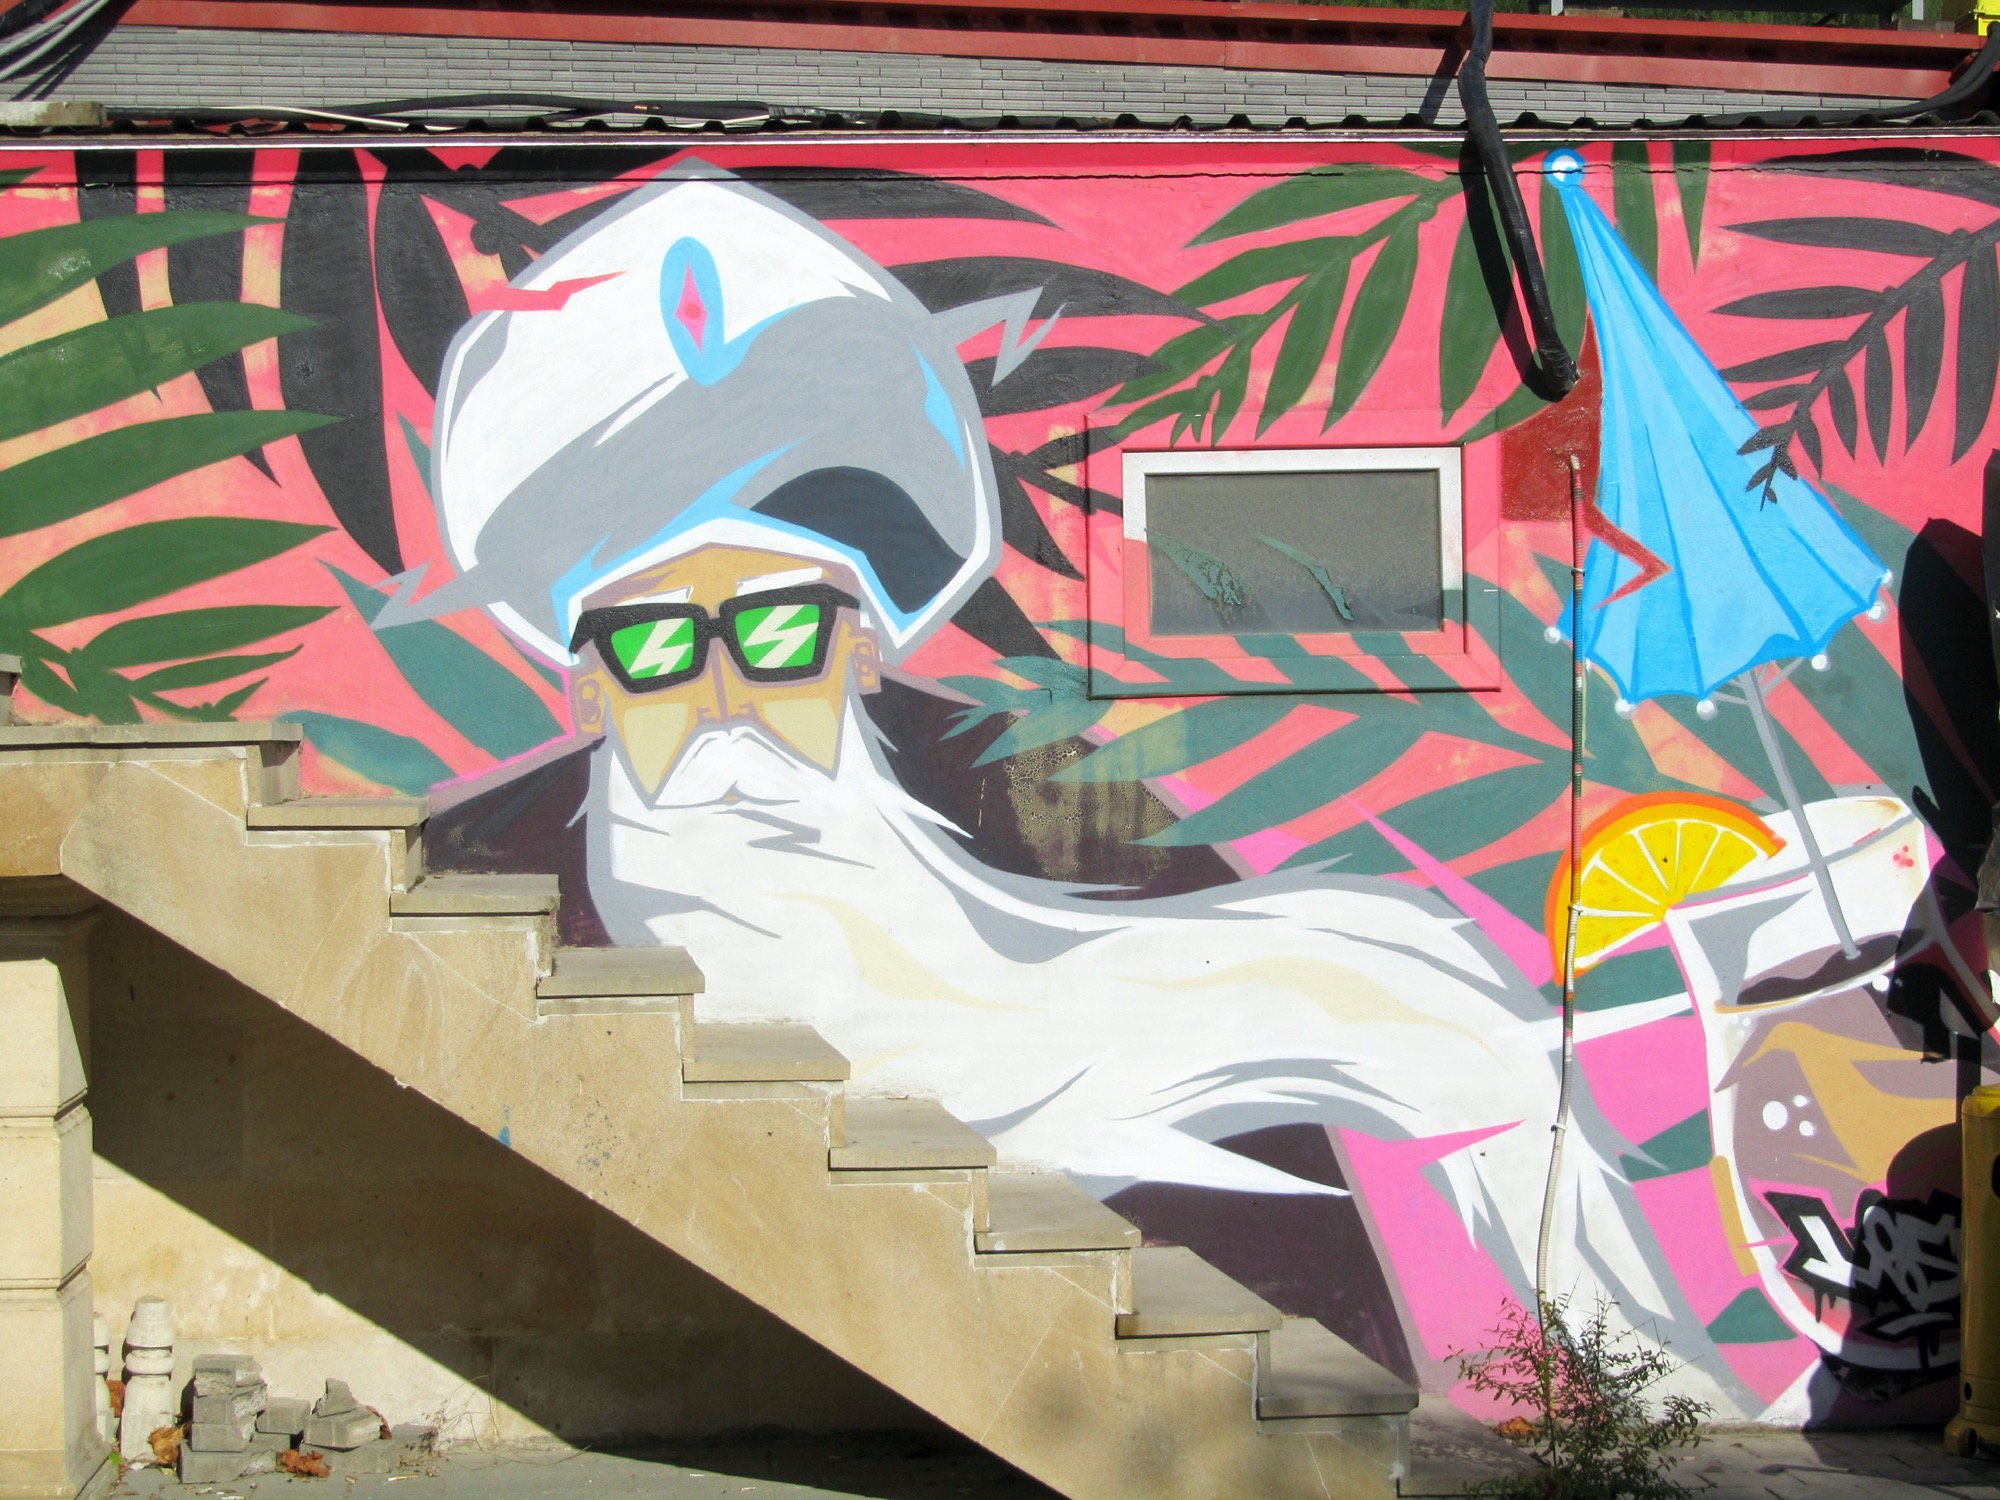 Graffiti 4356 Lounge by the artist Moosem135 captured by elettrotajik in Bakı Azerbaijan